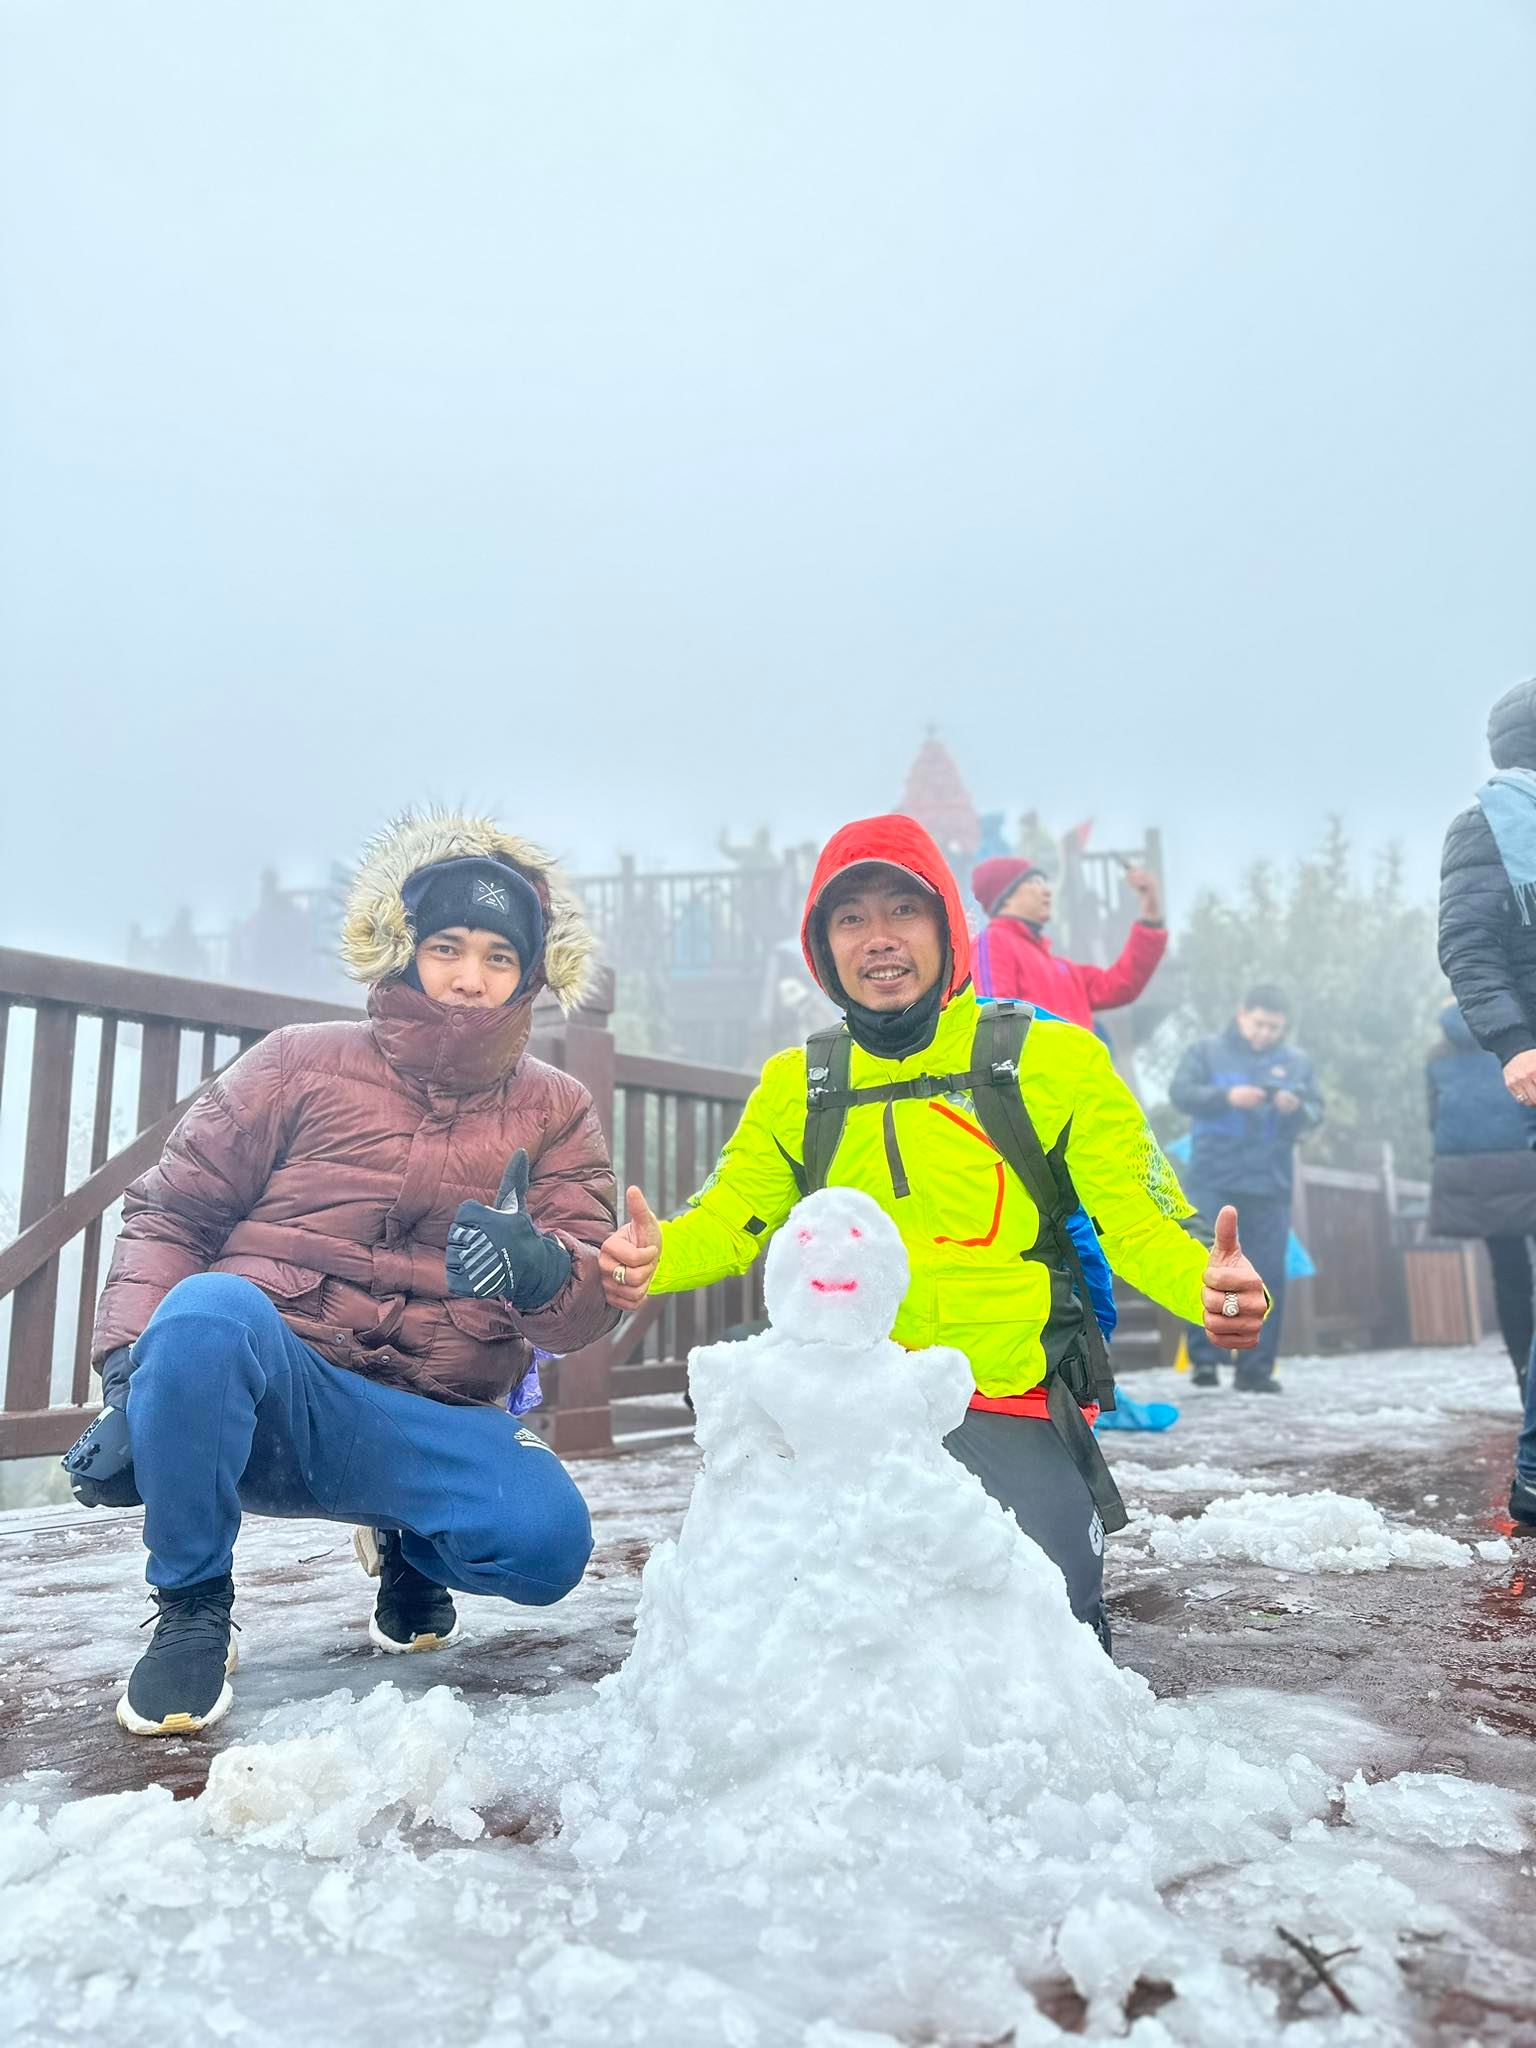 Tuyết tiếp tục rơi dày trên đỉnh Fansipan trong sáng nay, du khách hào hứng trước cảnh tượng đặc sắc - Ảnh 4.